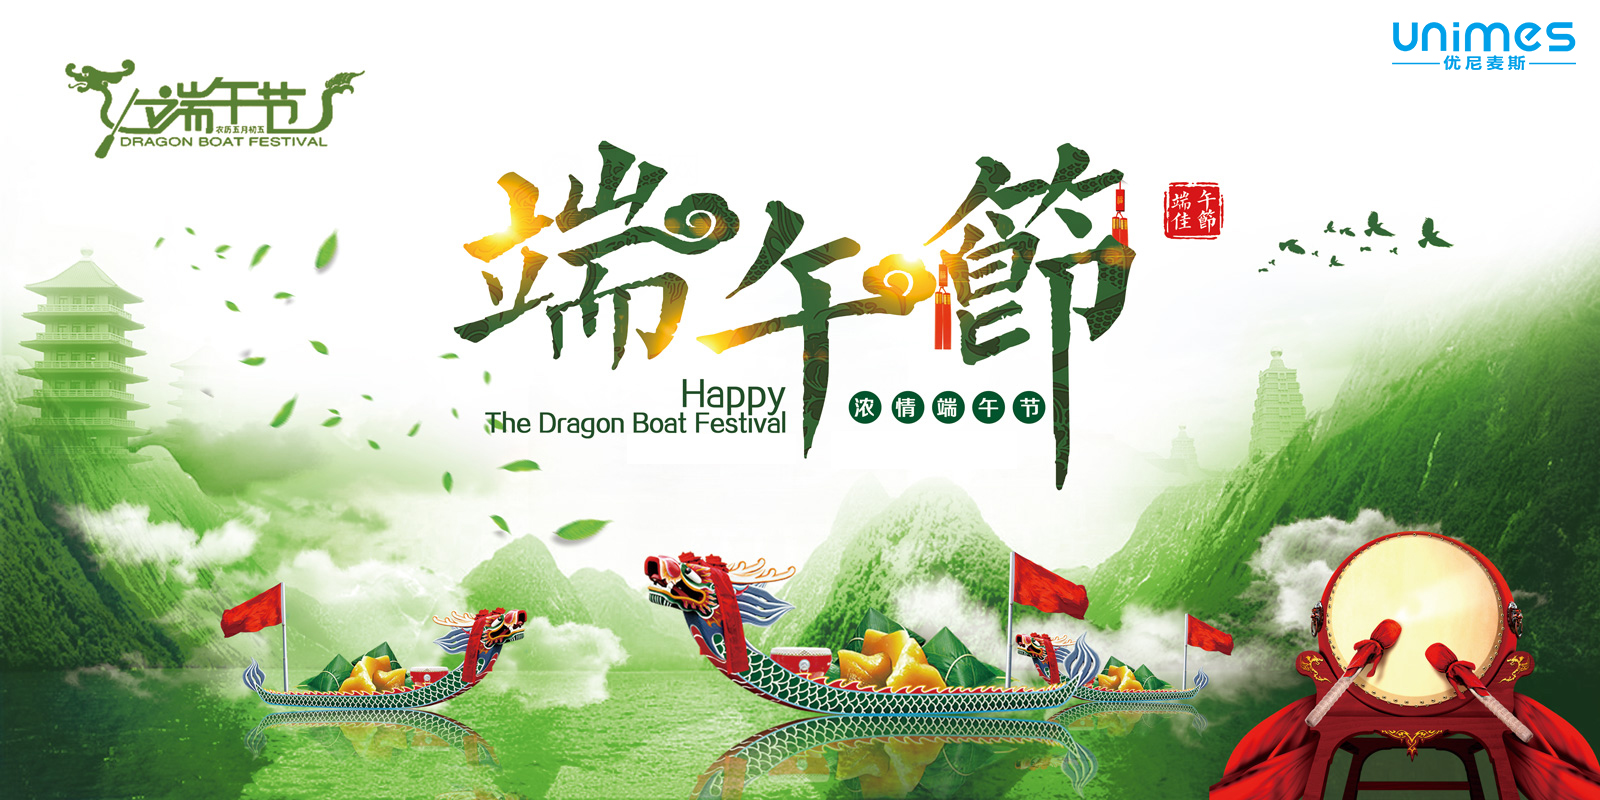 Unimes wishes a wonderful Dragon Boat Festival